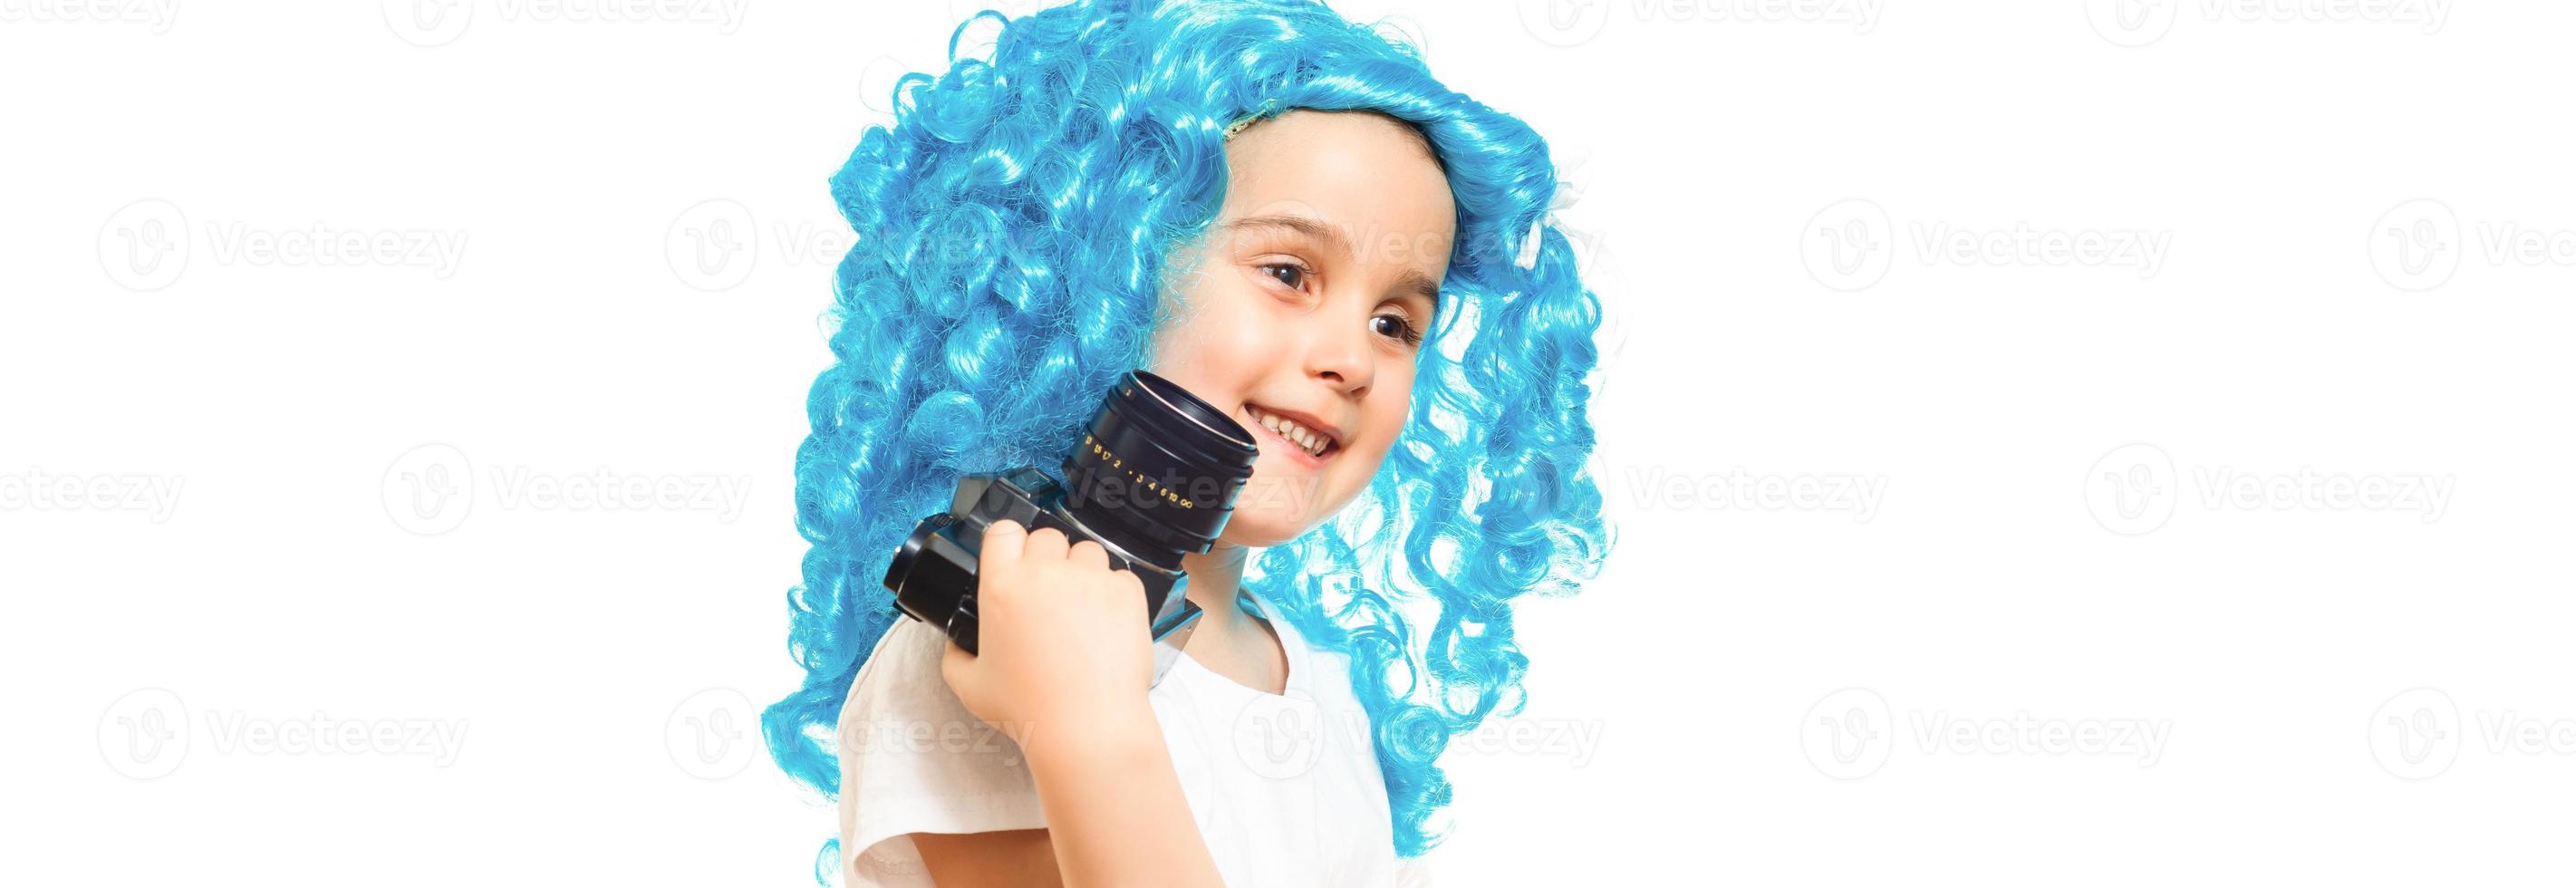 Schönheit im funky Stil. süßes baby mit langen blauen haaren. kleines Kind trägt blaues Perückenhaar. kleines Kind in ausgefallener Perückenfrisur. Entzückendes kleines Kind in modischer Perücke. Beauty-Look-Frisur für Cosplay-Party. foto